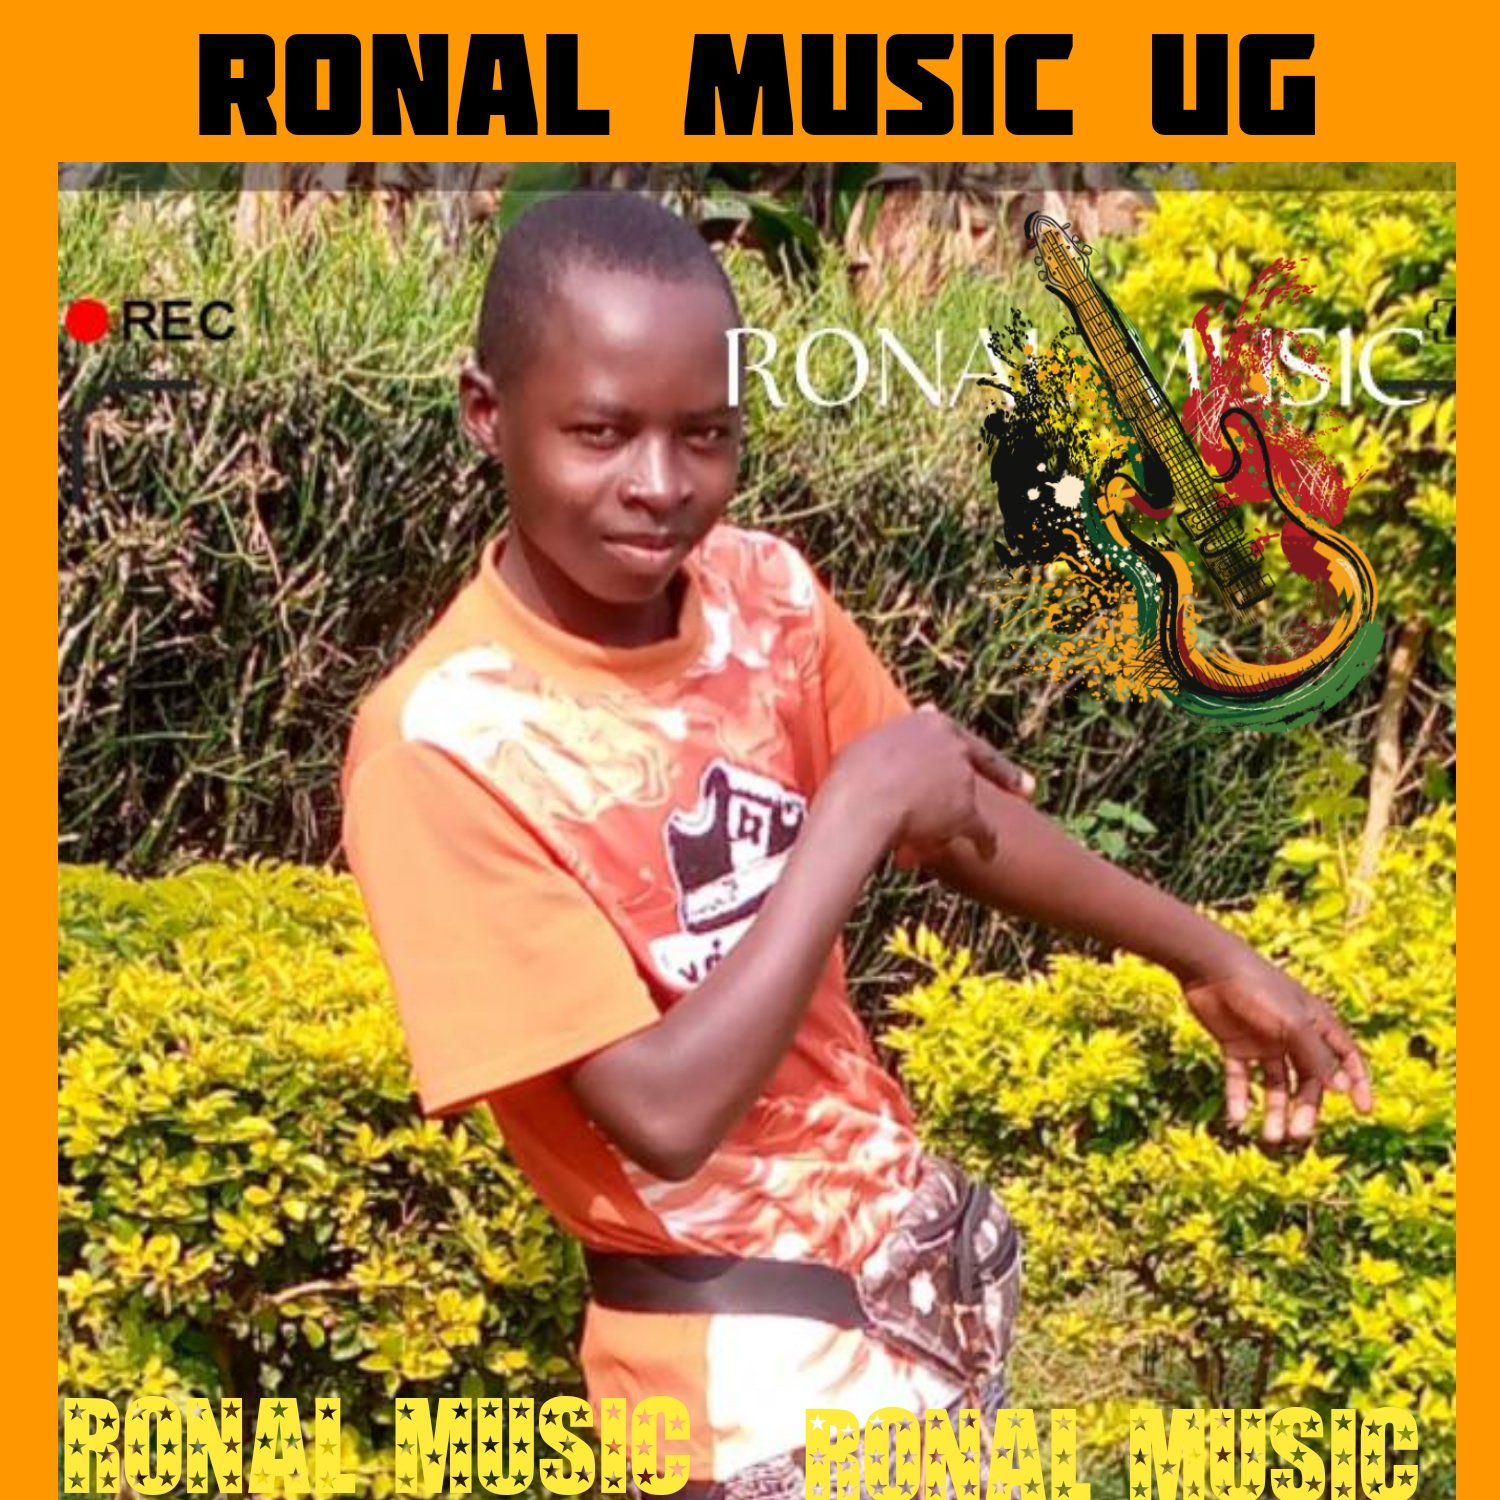 Ronal Music UG